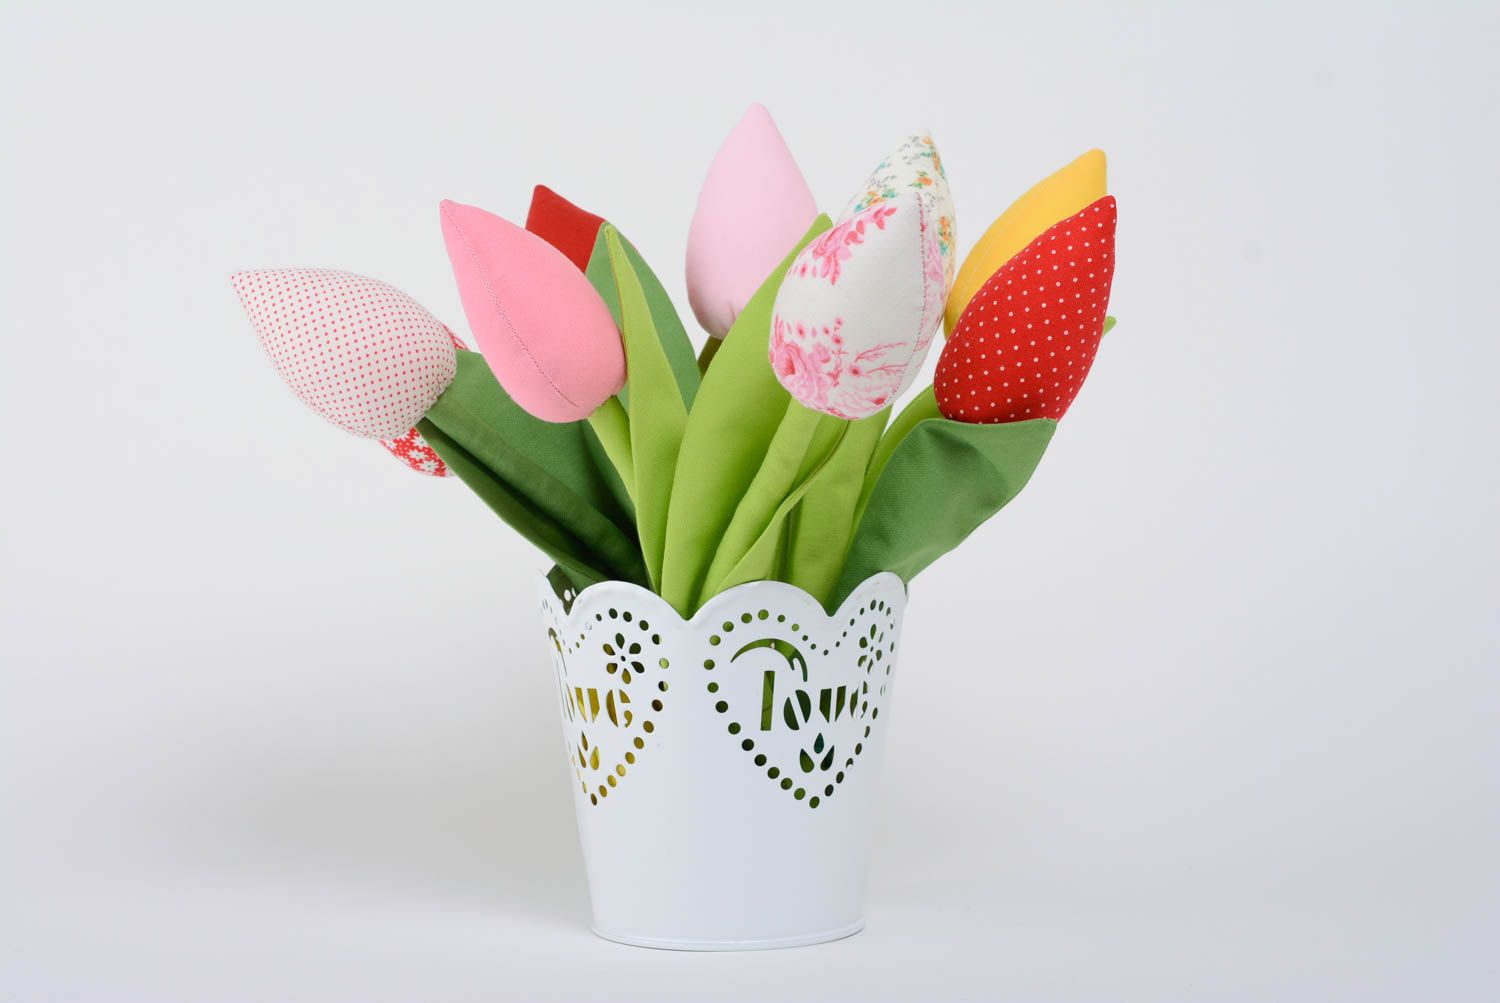 Текстильный тюльпан из хлопка на гибкой ножке для декора или фотосессии хенд мэйд фото 5